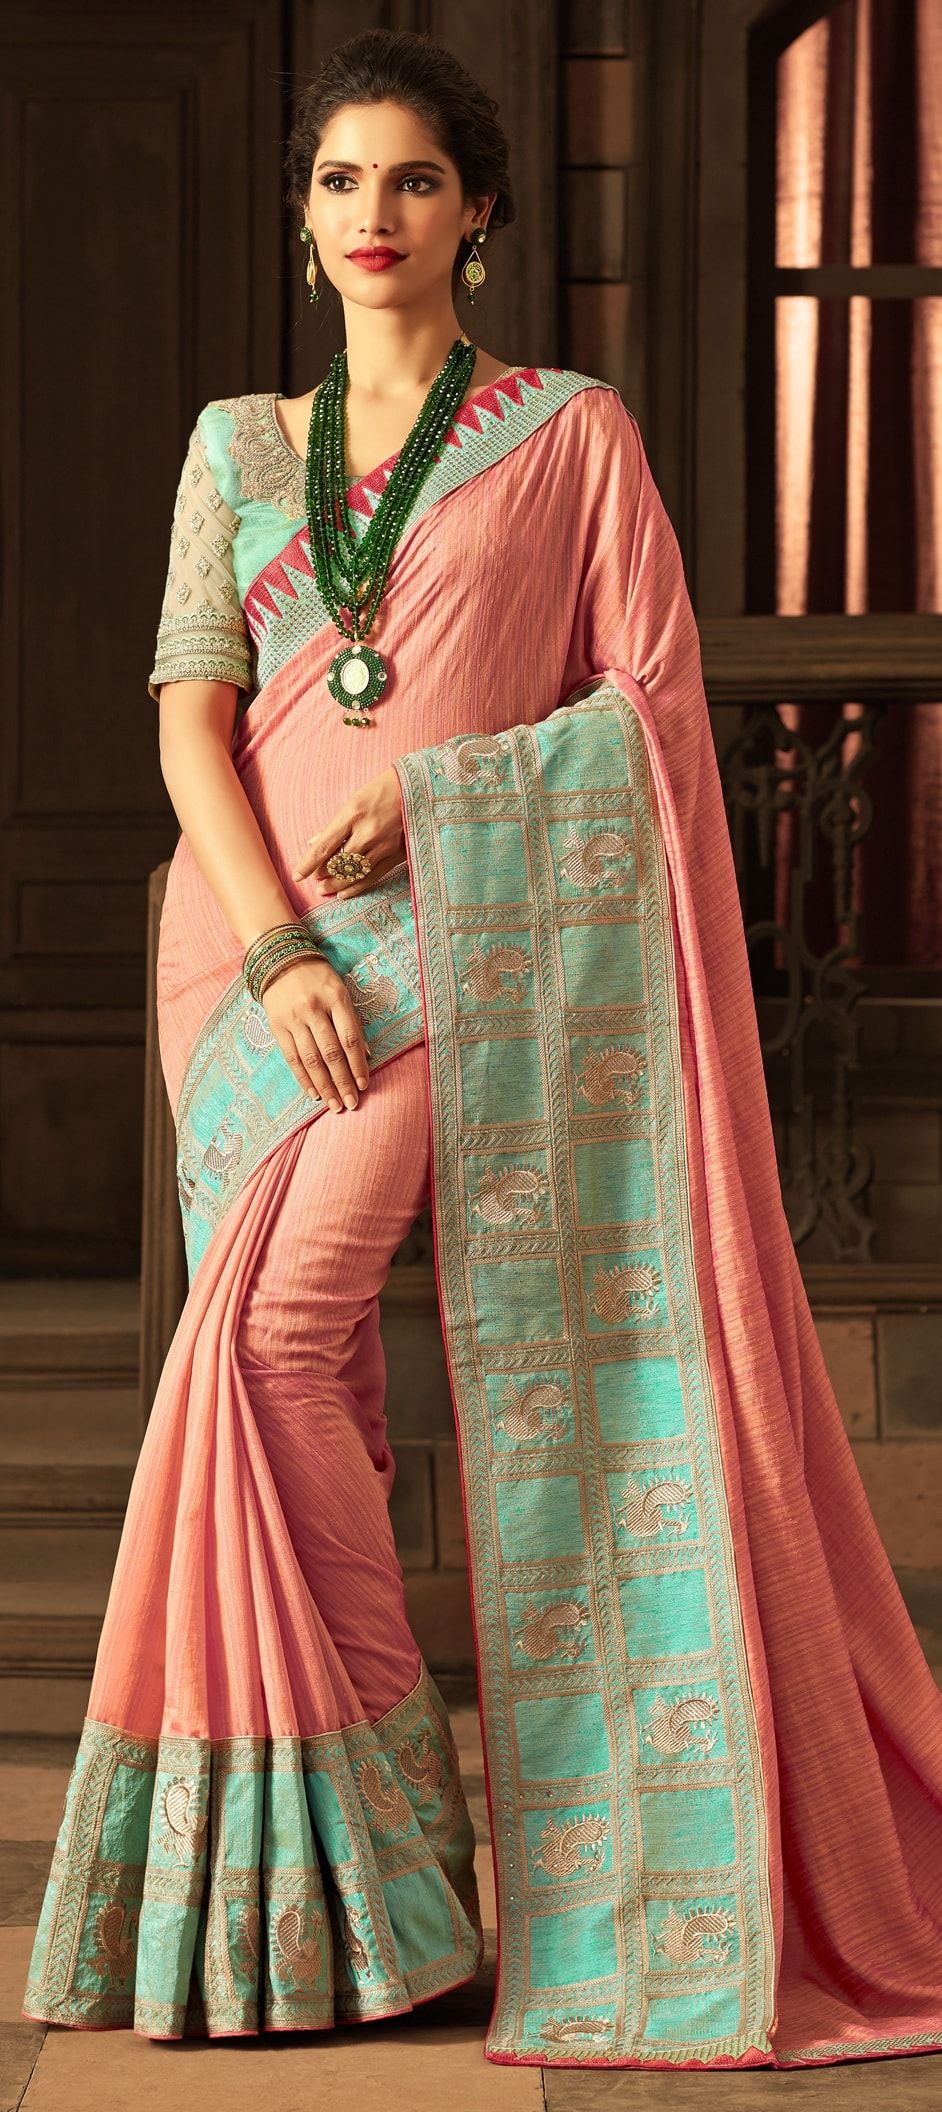 Одежда индии сари. Сари (женская одежда в Индии). Сари в Индии повседневной. Сари индийская одежда Повседневная. Традиционные костюмы Индии Сари.